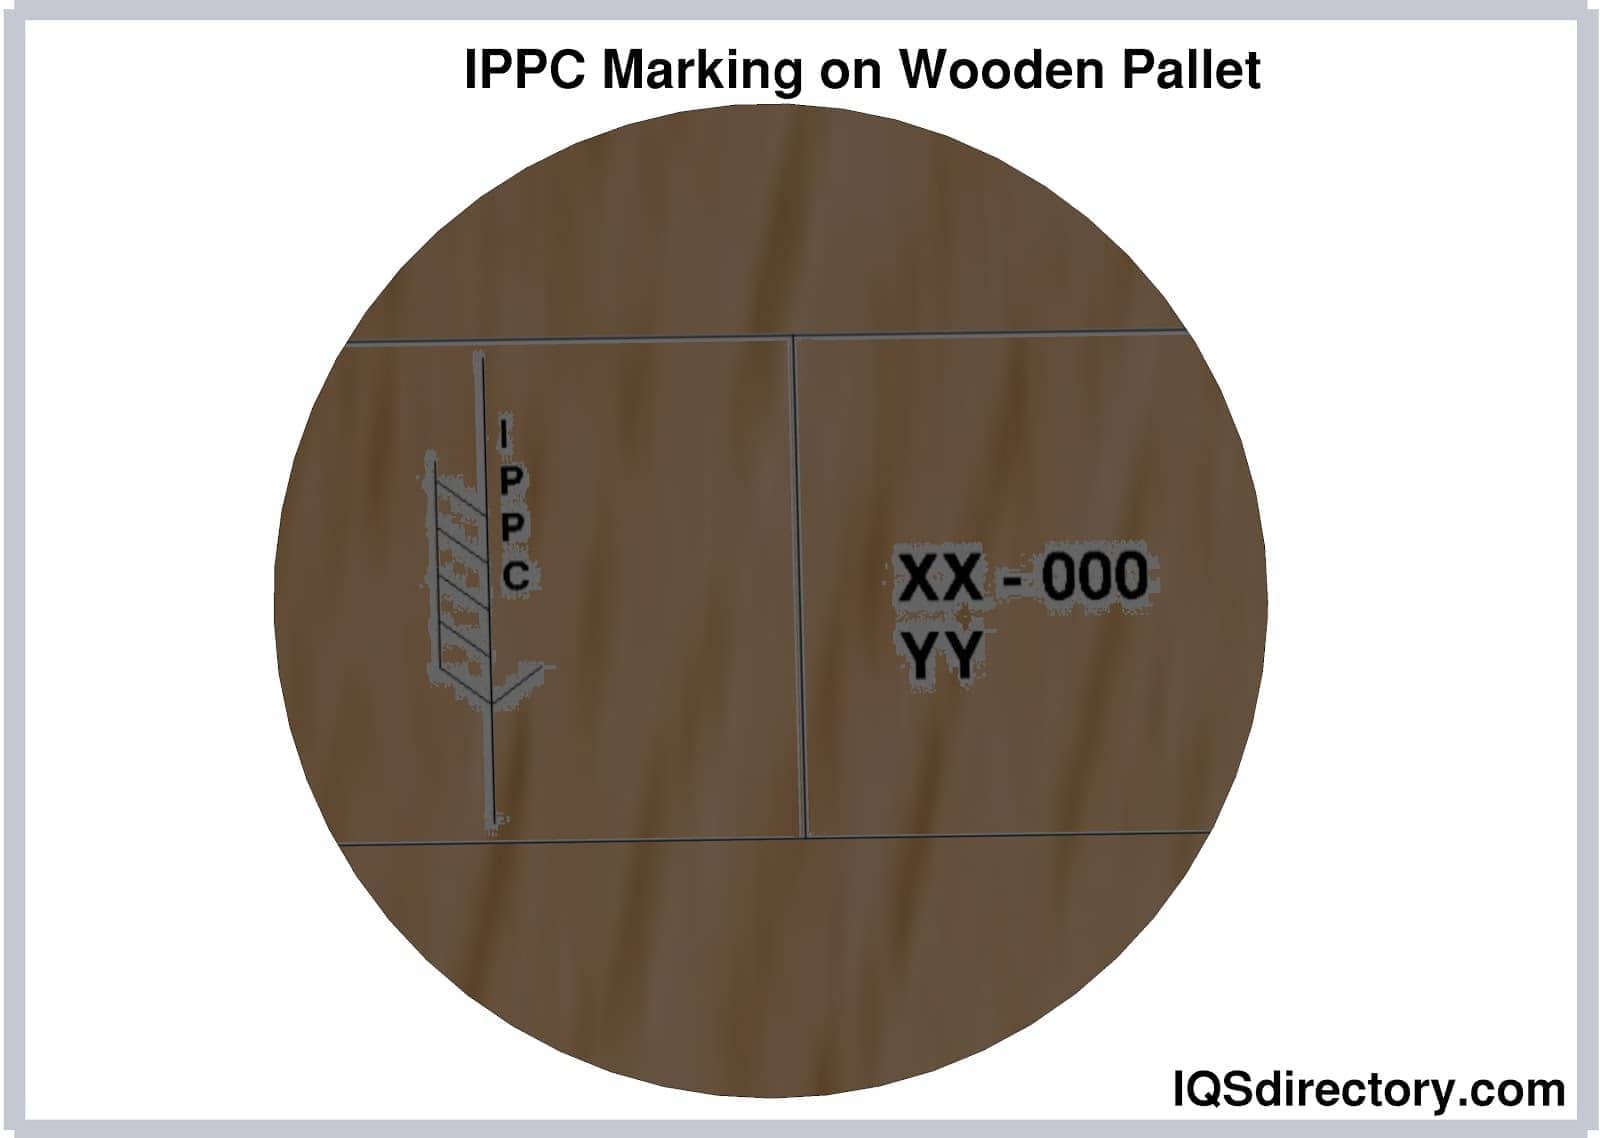 IPPC Marking on Wooden Pallet